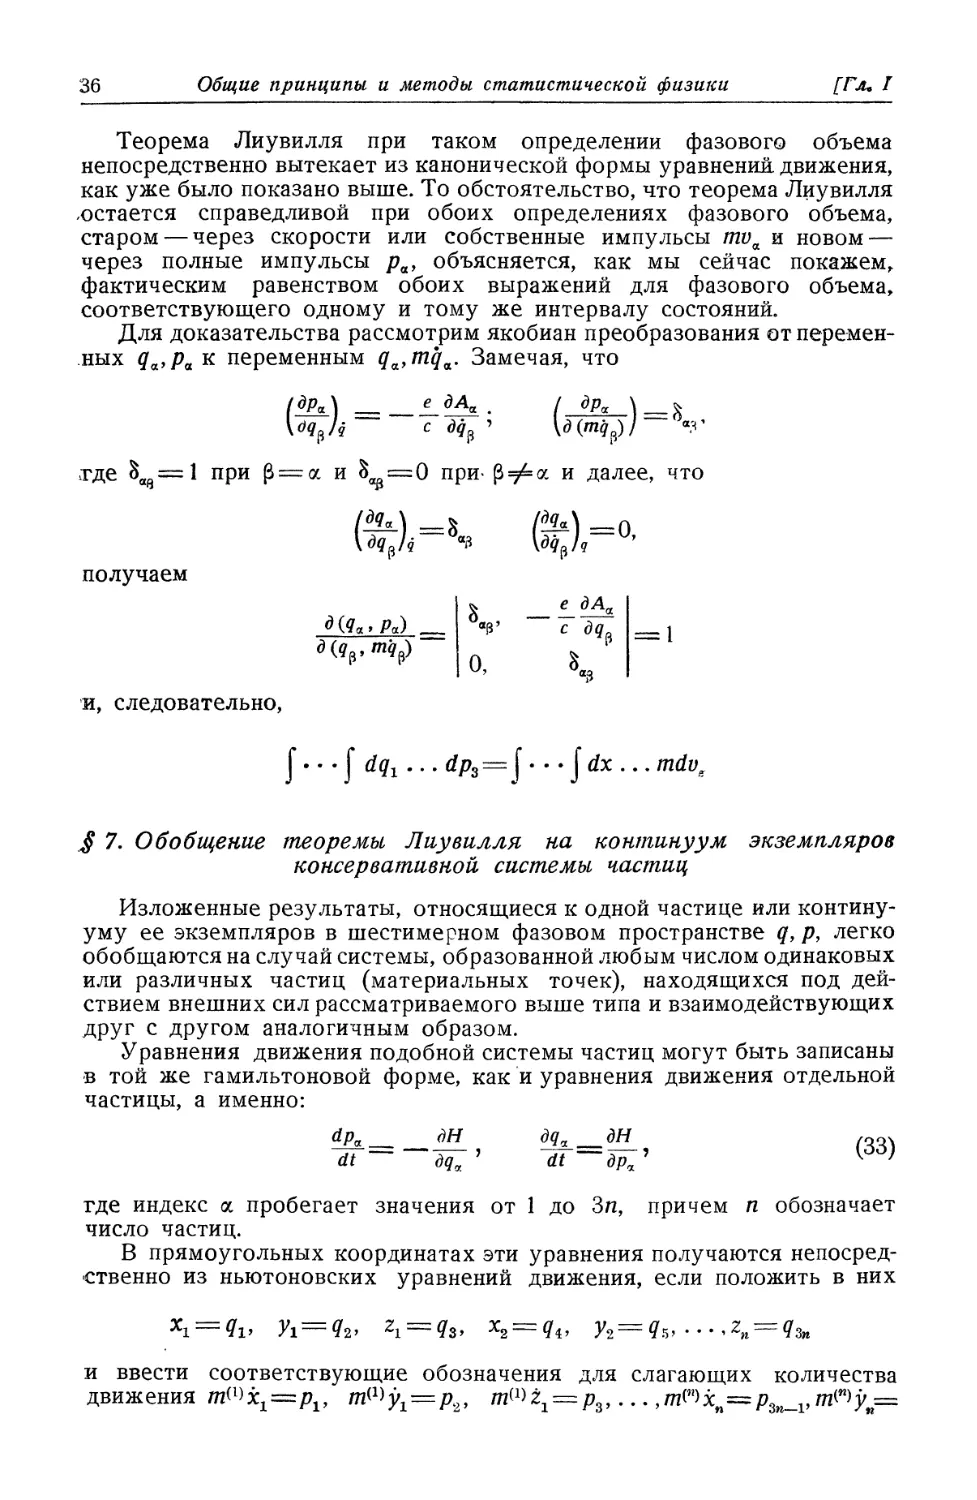 § 7. Обобщение теоремы Лиувилля на континуум экземпляров консервативной системы частиц